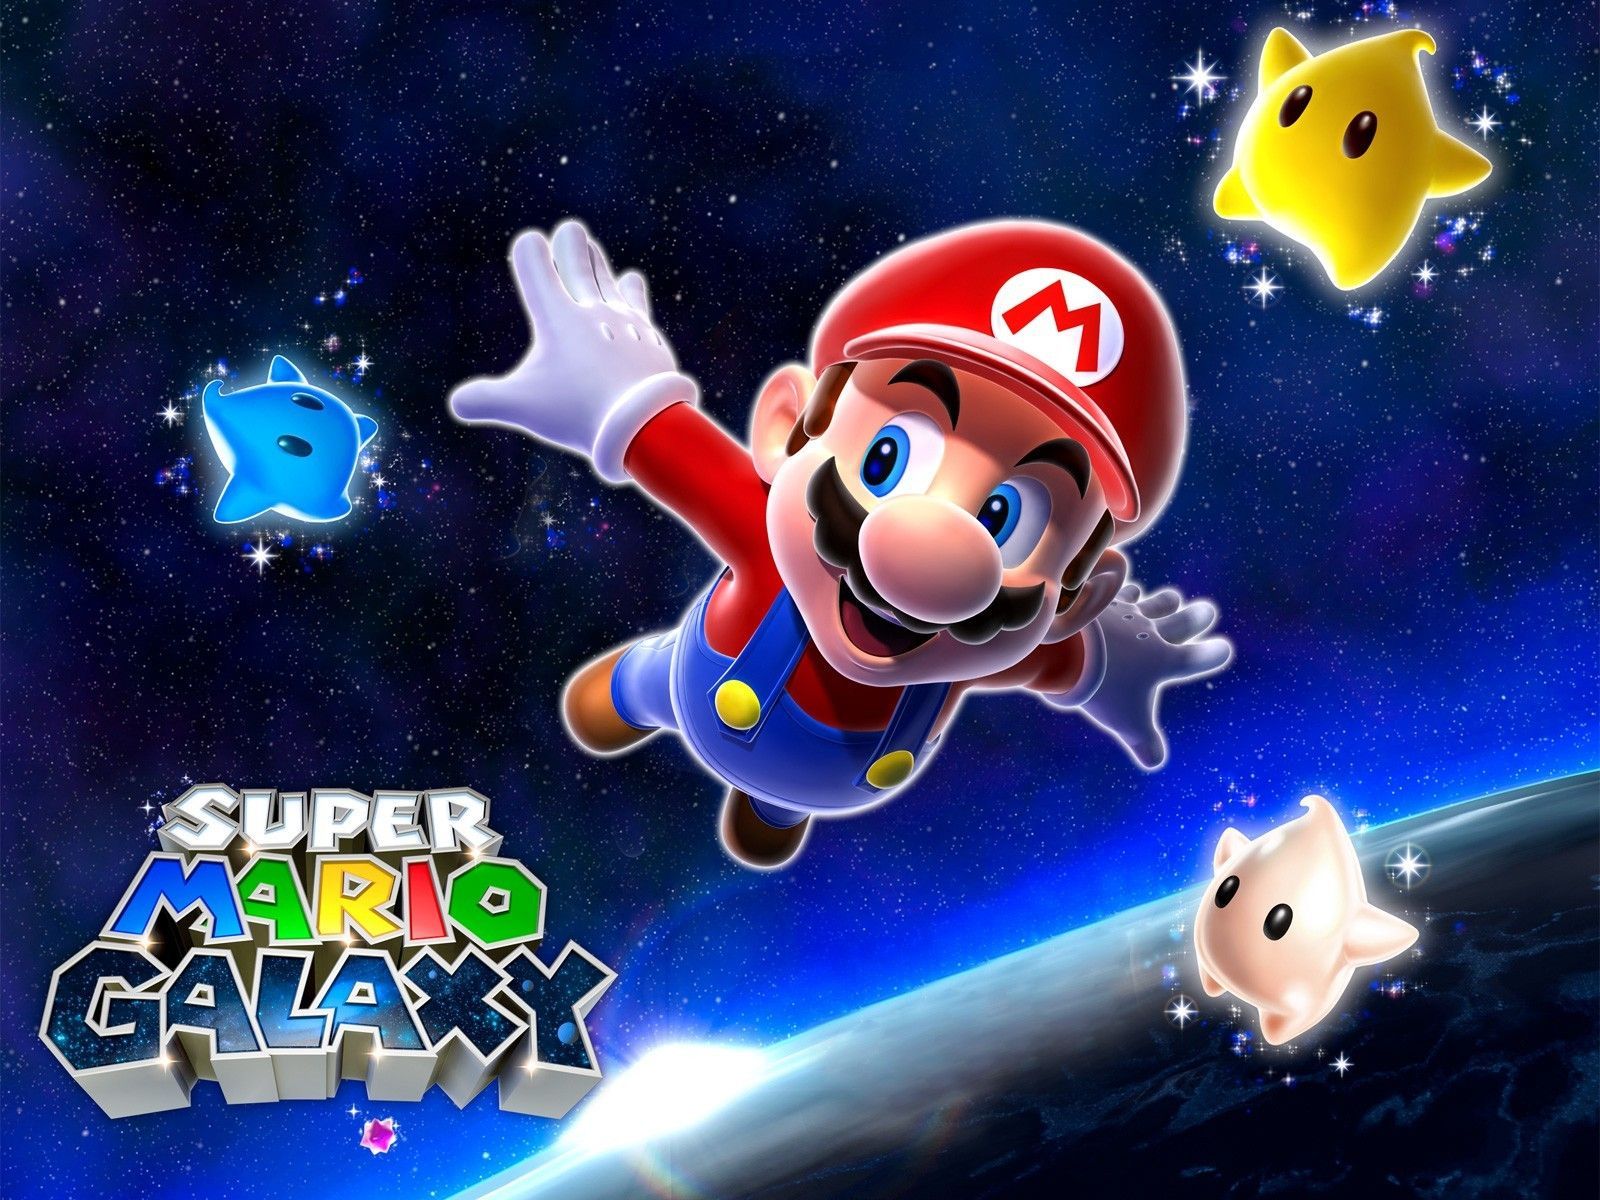 Super Mario Galaxy Games Wallpaper Free Downlo Wallpaper